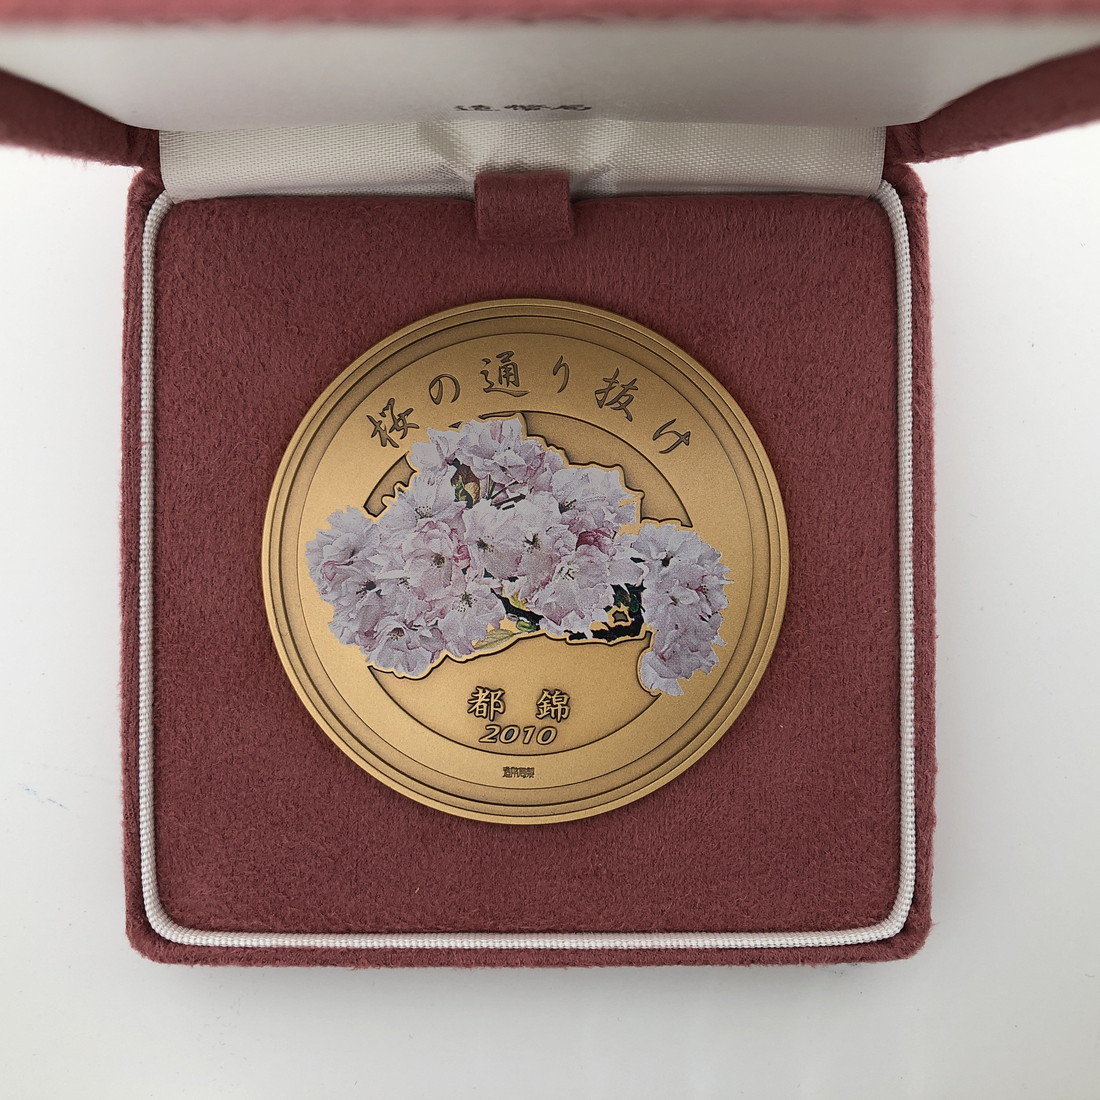 楽天市場】平成22年 桜の通り抜け記念 銅メダル『都錦』 造幣局 2010年